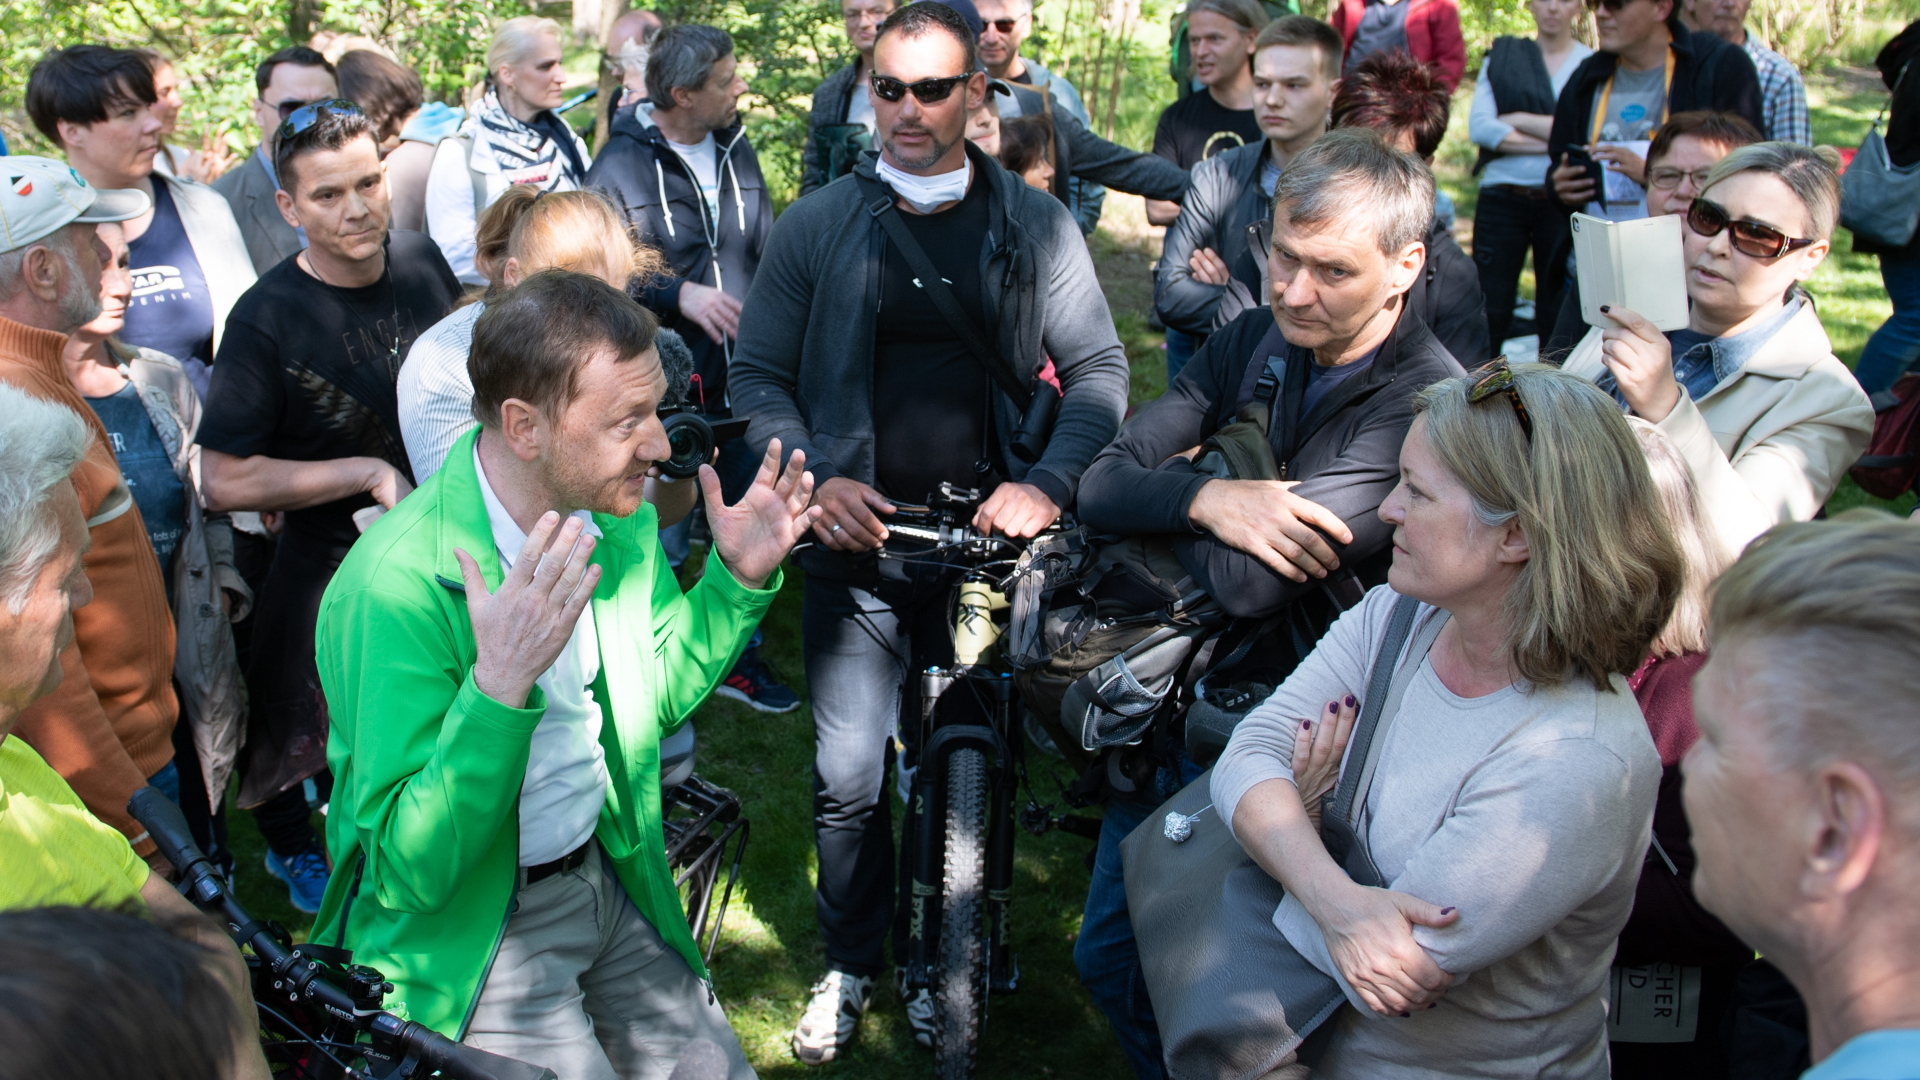 Sachsens Regierungschef Kretschmer diskutiert mit Demonstranten | dpa